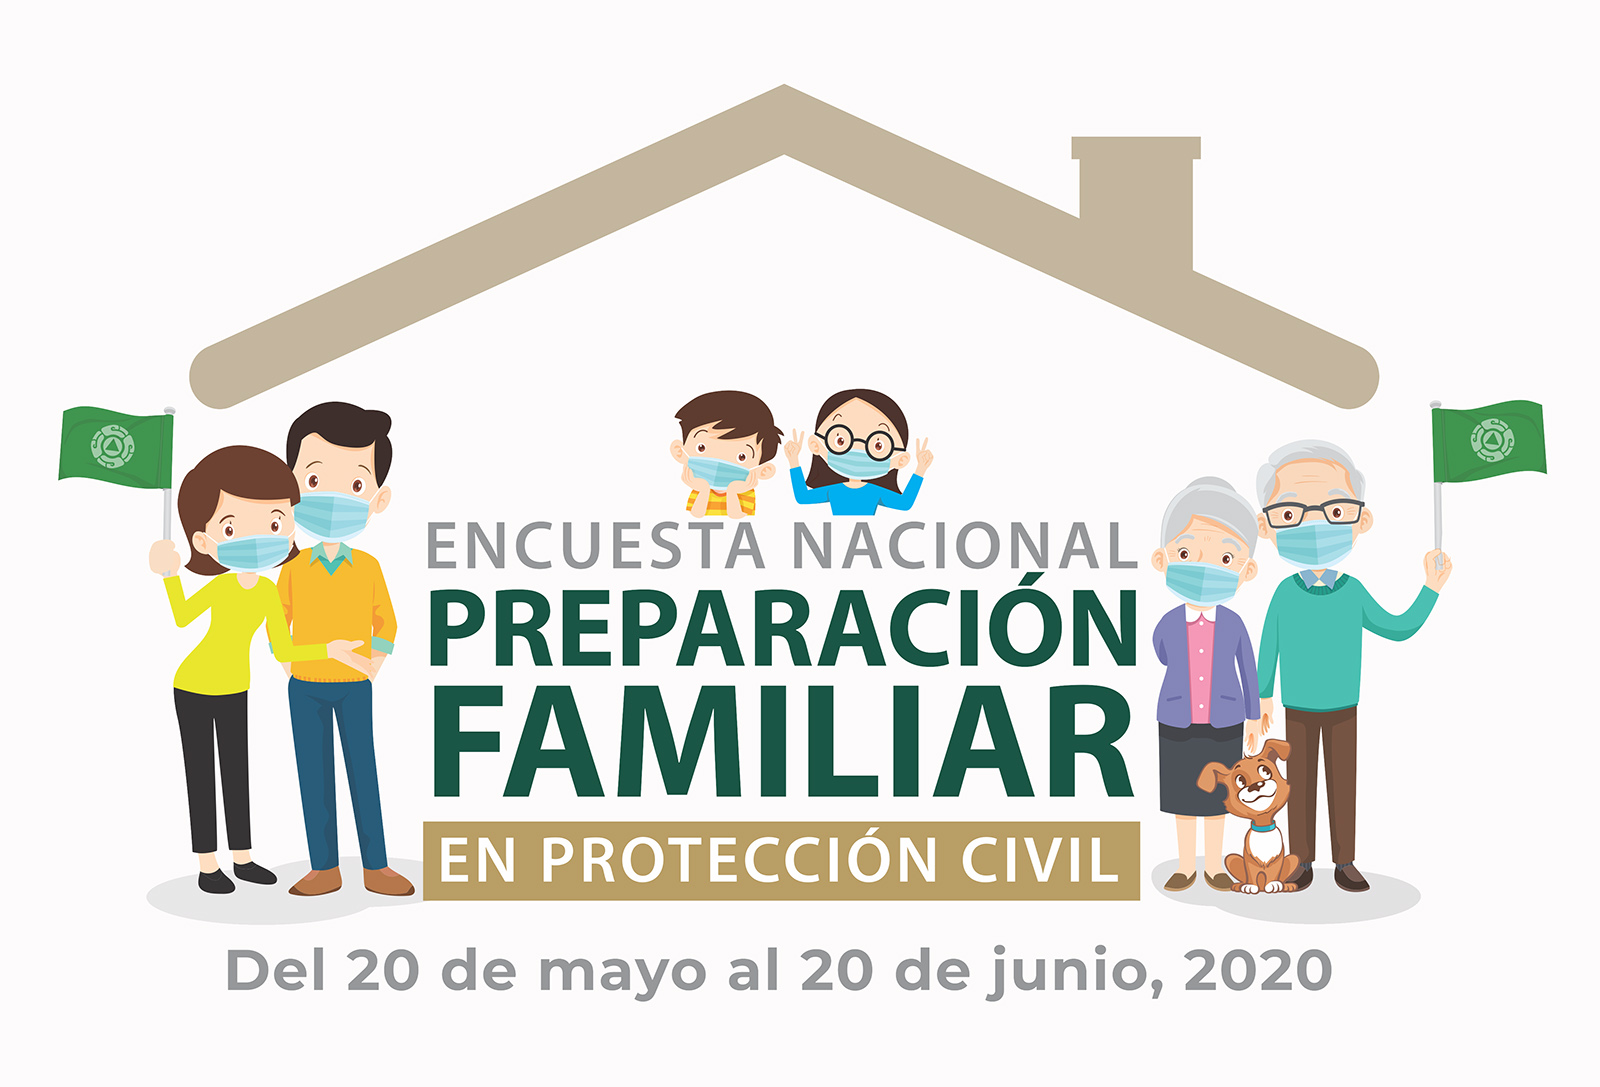 Encuesta Nacional Preparación Familiar en Protección Civil